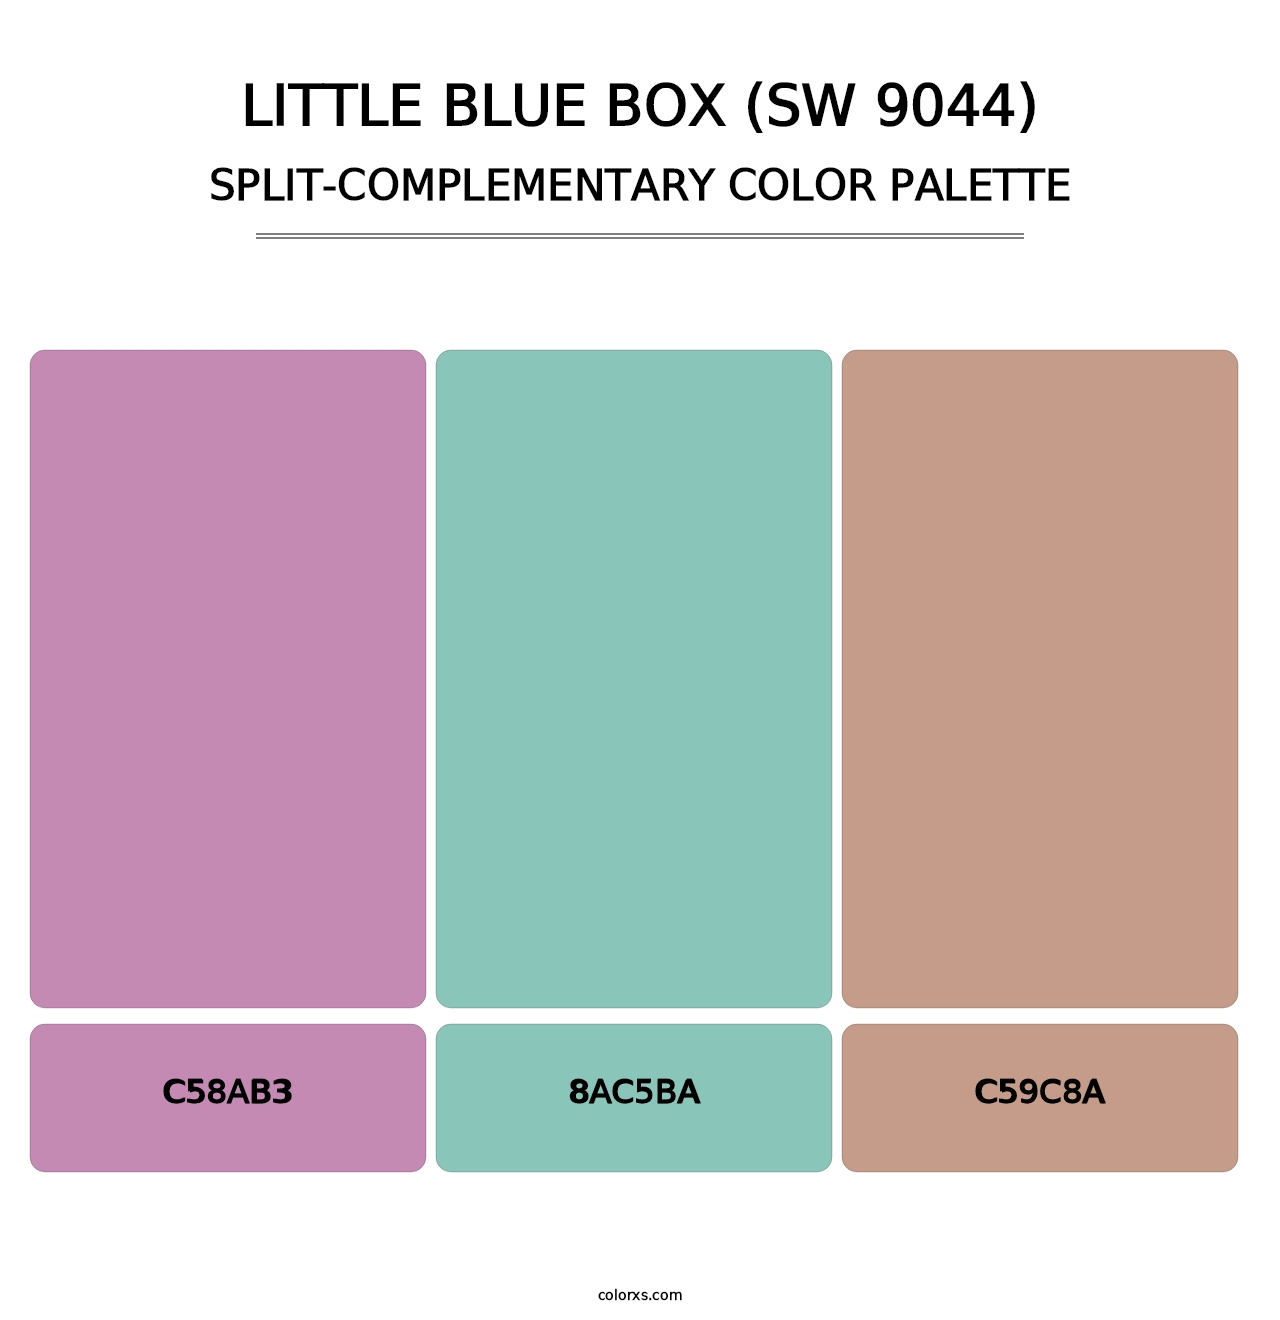 Little Blue Box (SW 9044) - Split-Complementary Color Palette